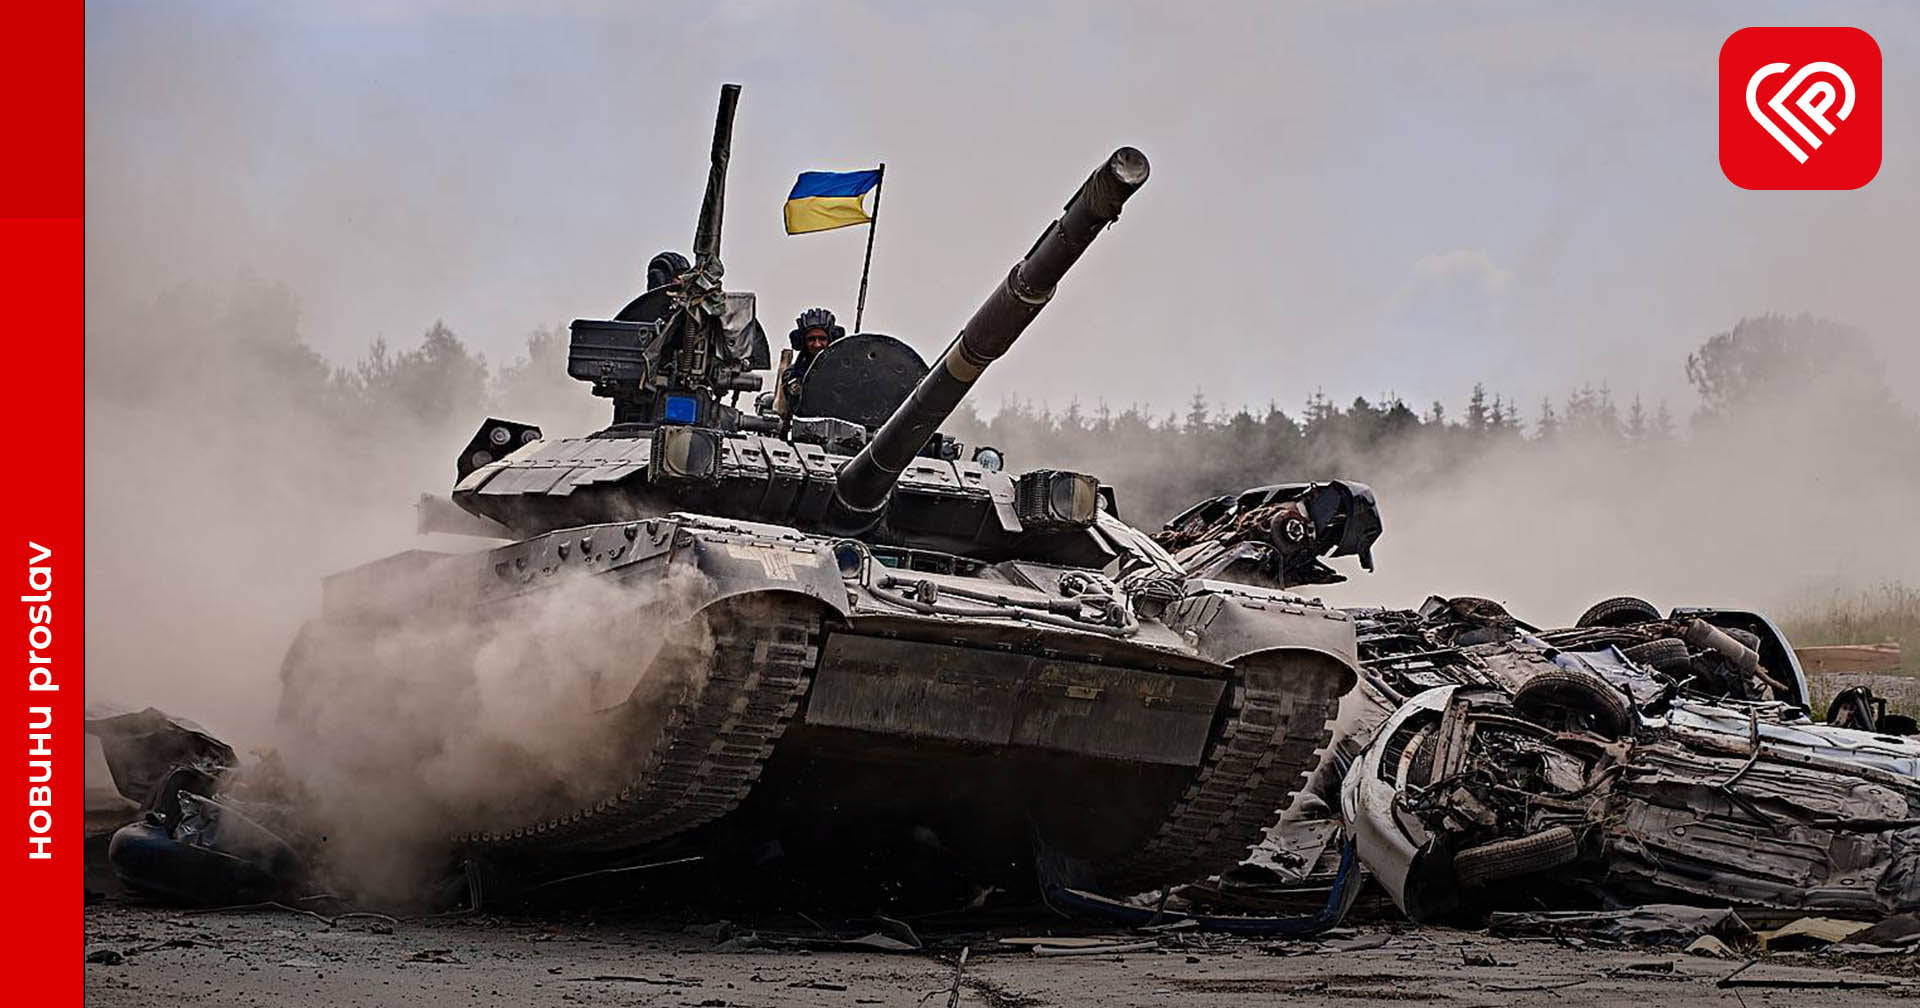 «Міцної броні та влучних пострілів Вам»: сьогодні в Україні відзначають День танкістів